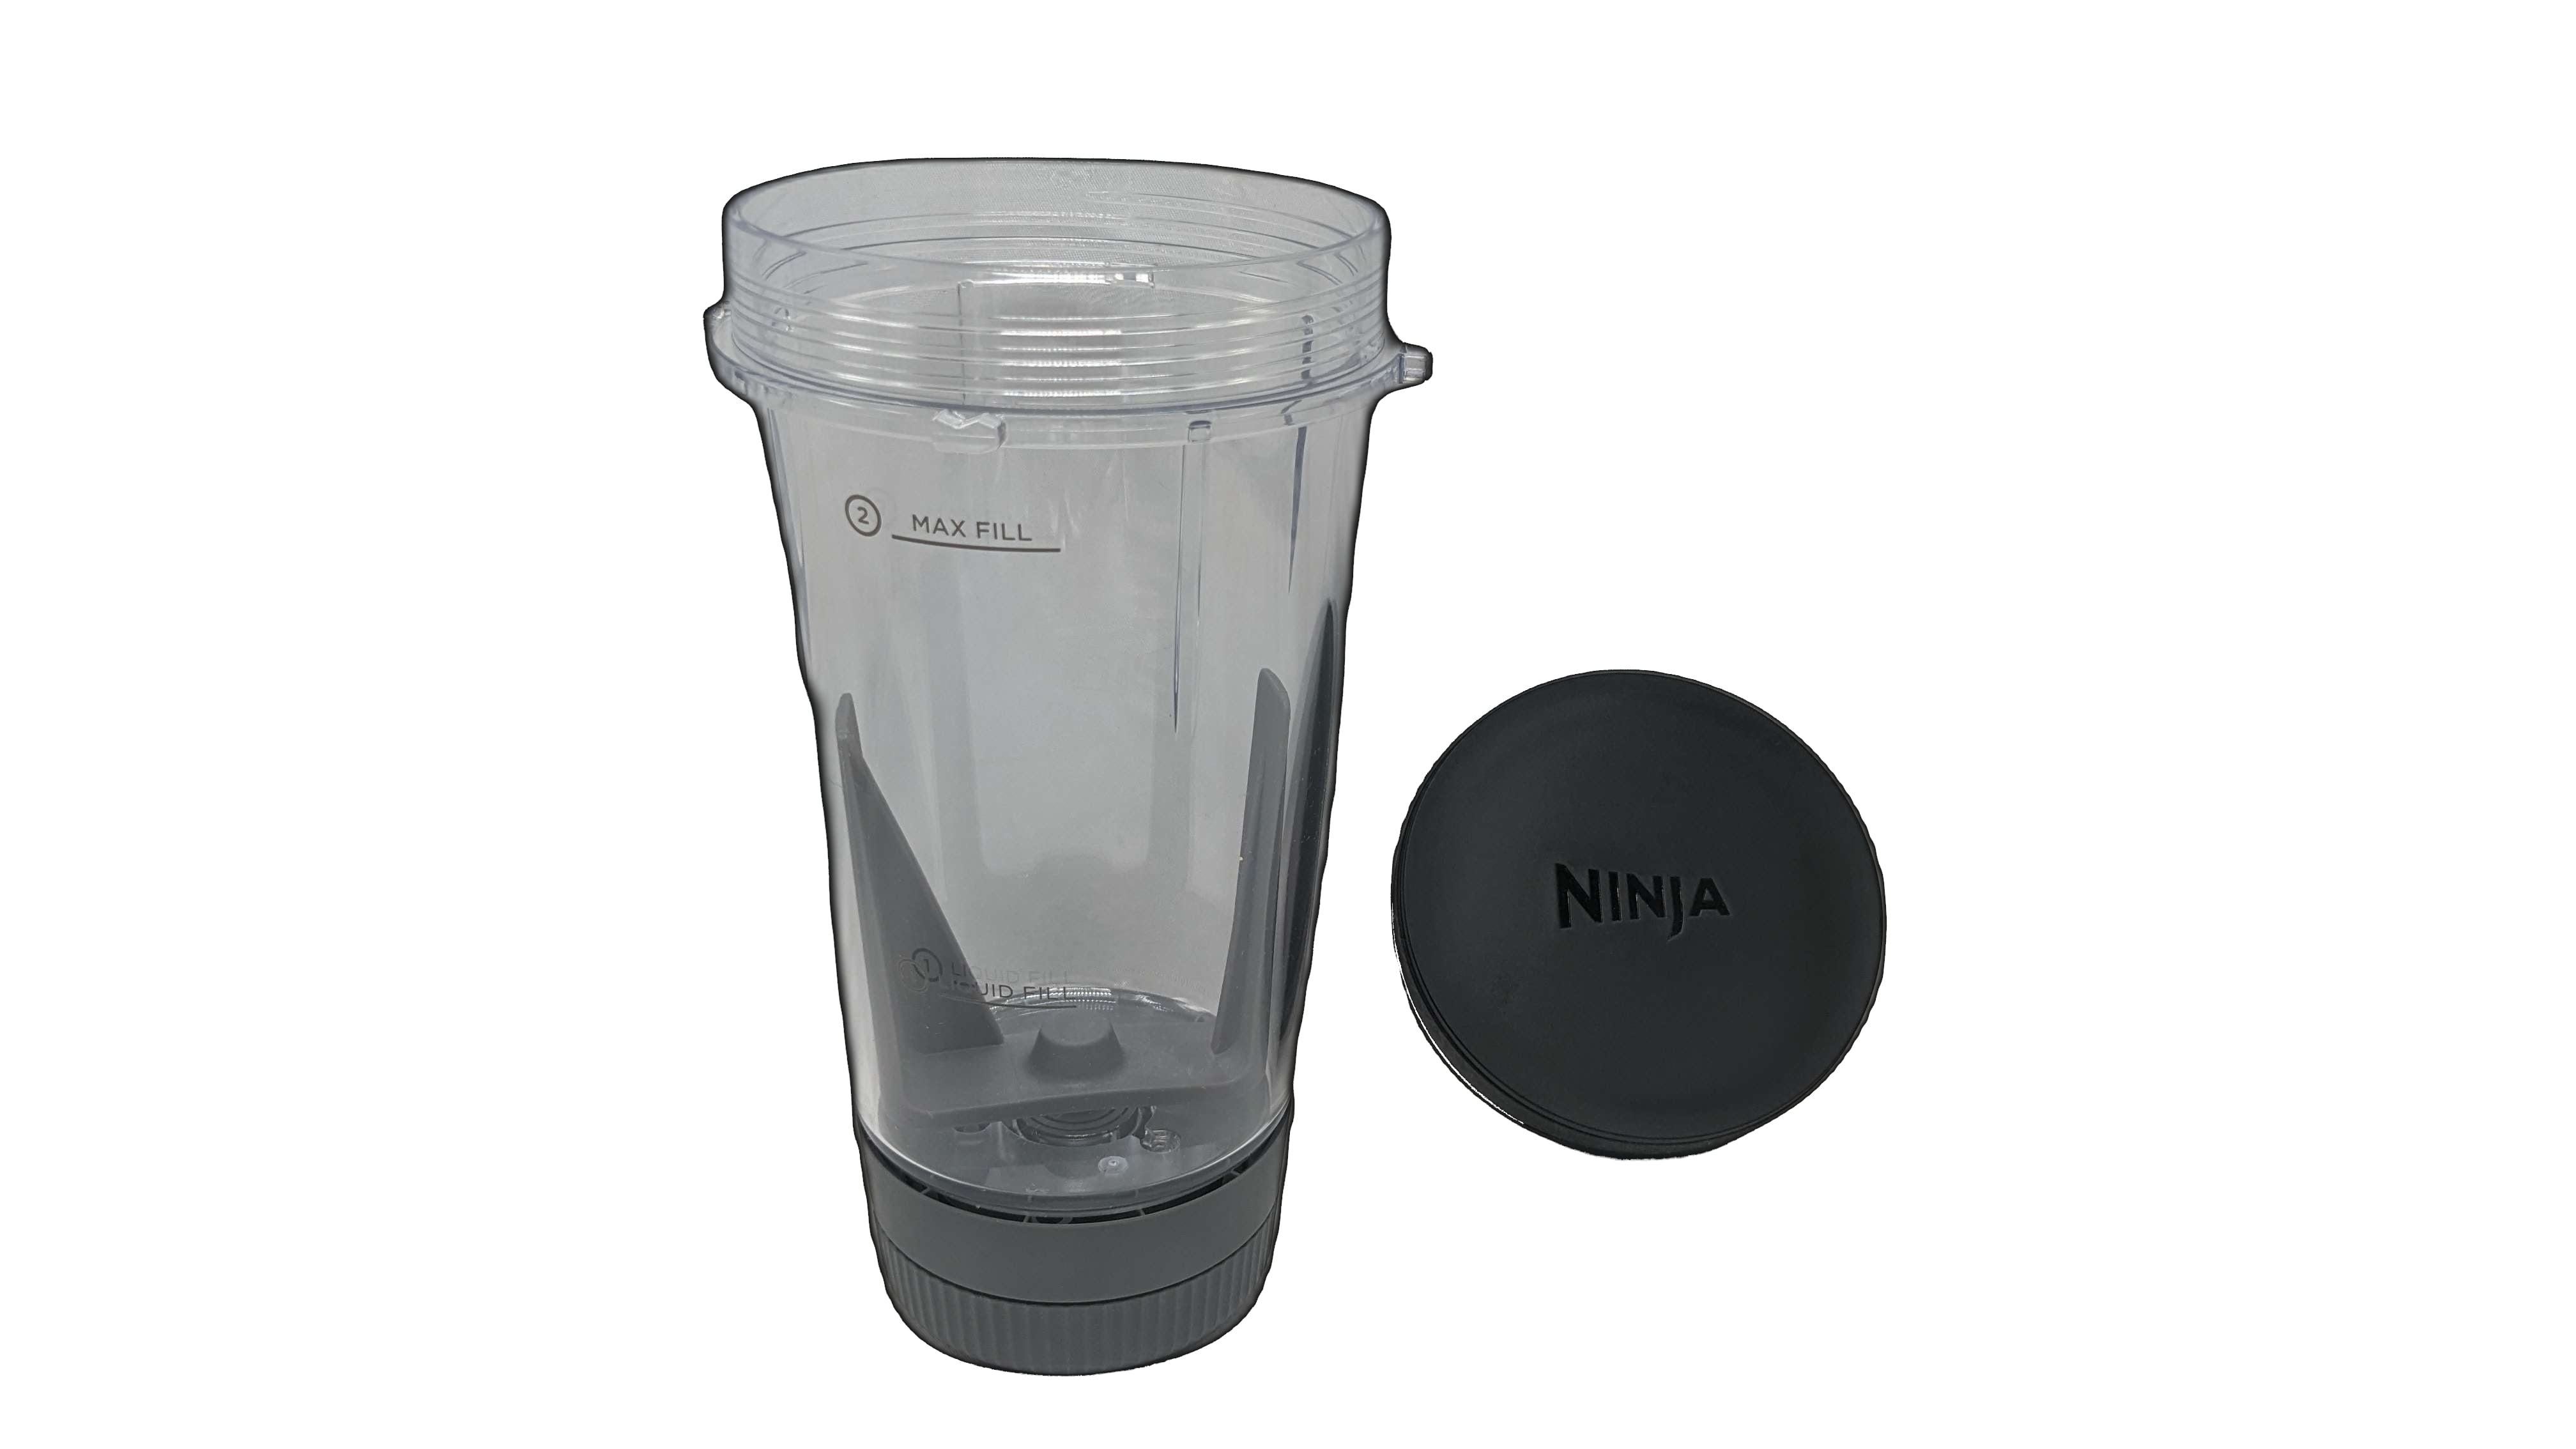  Ninja Foodi Blender Smoothie Bowl Maker with Built-In Tamper  and Storage Lid - 14 oz : Home & Kitchen